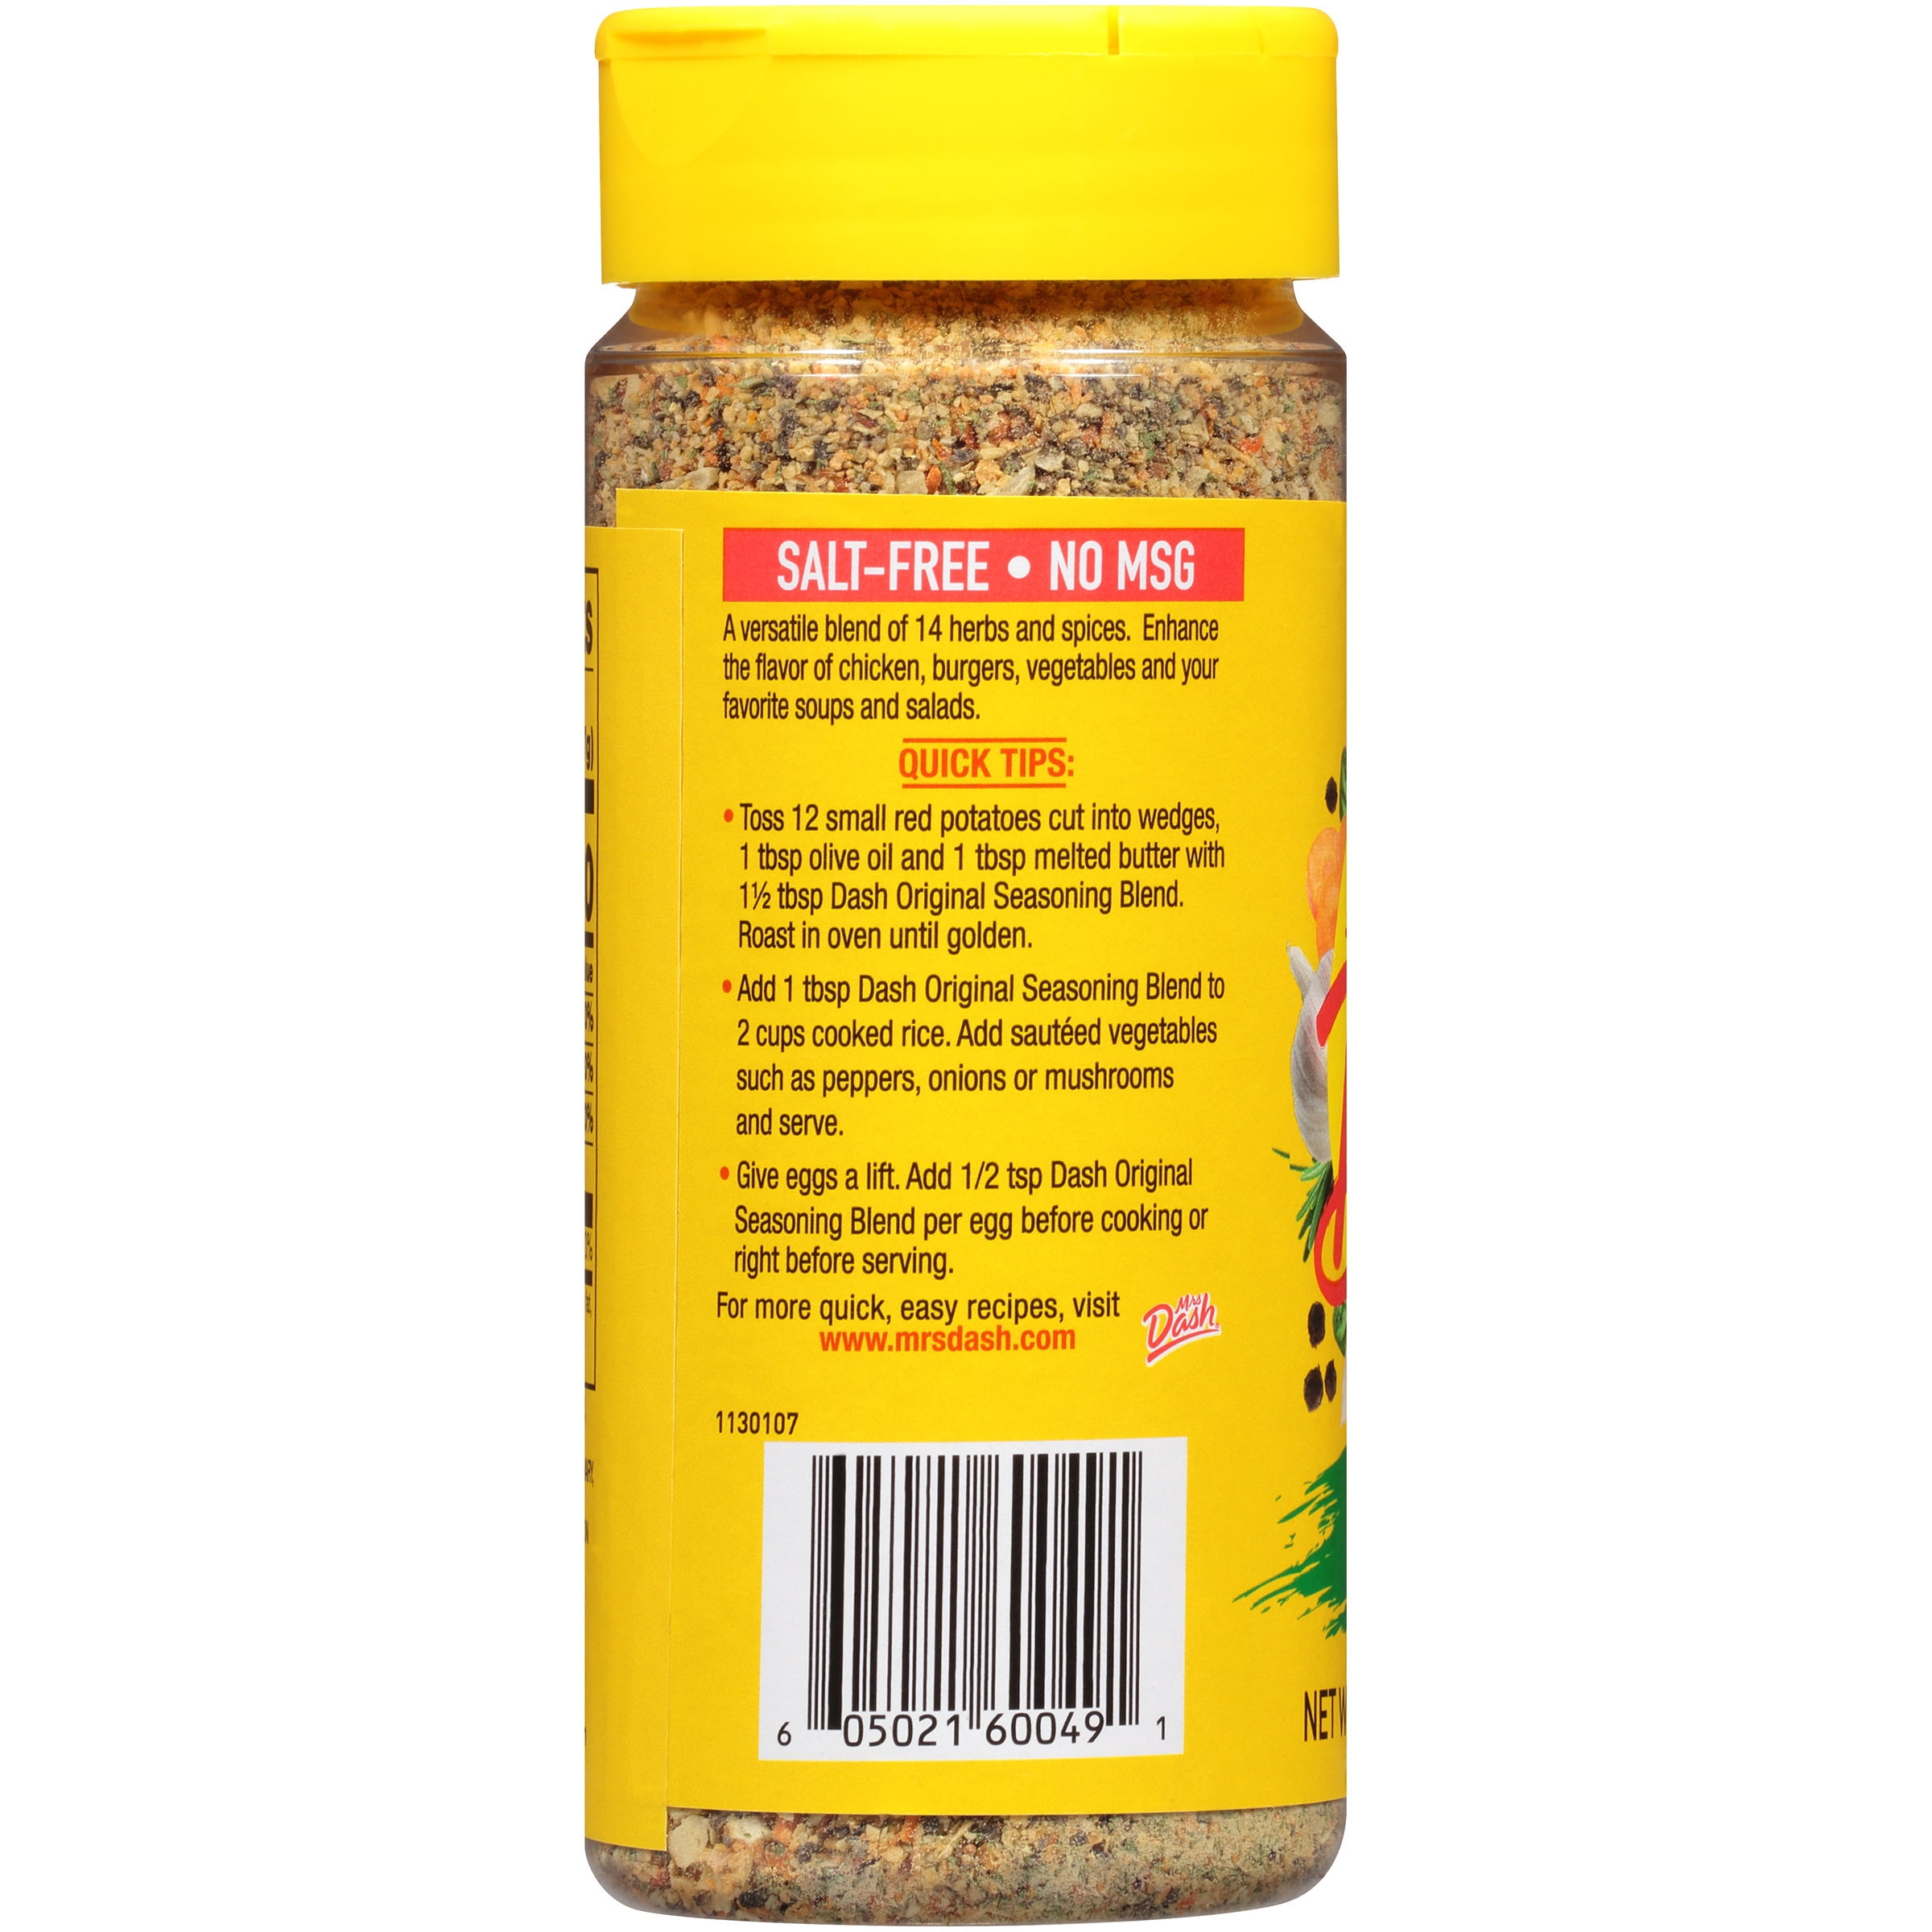 Dash™ Original Salt-Free Seasoning Blend, 6.75 oz - Kroger